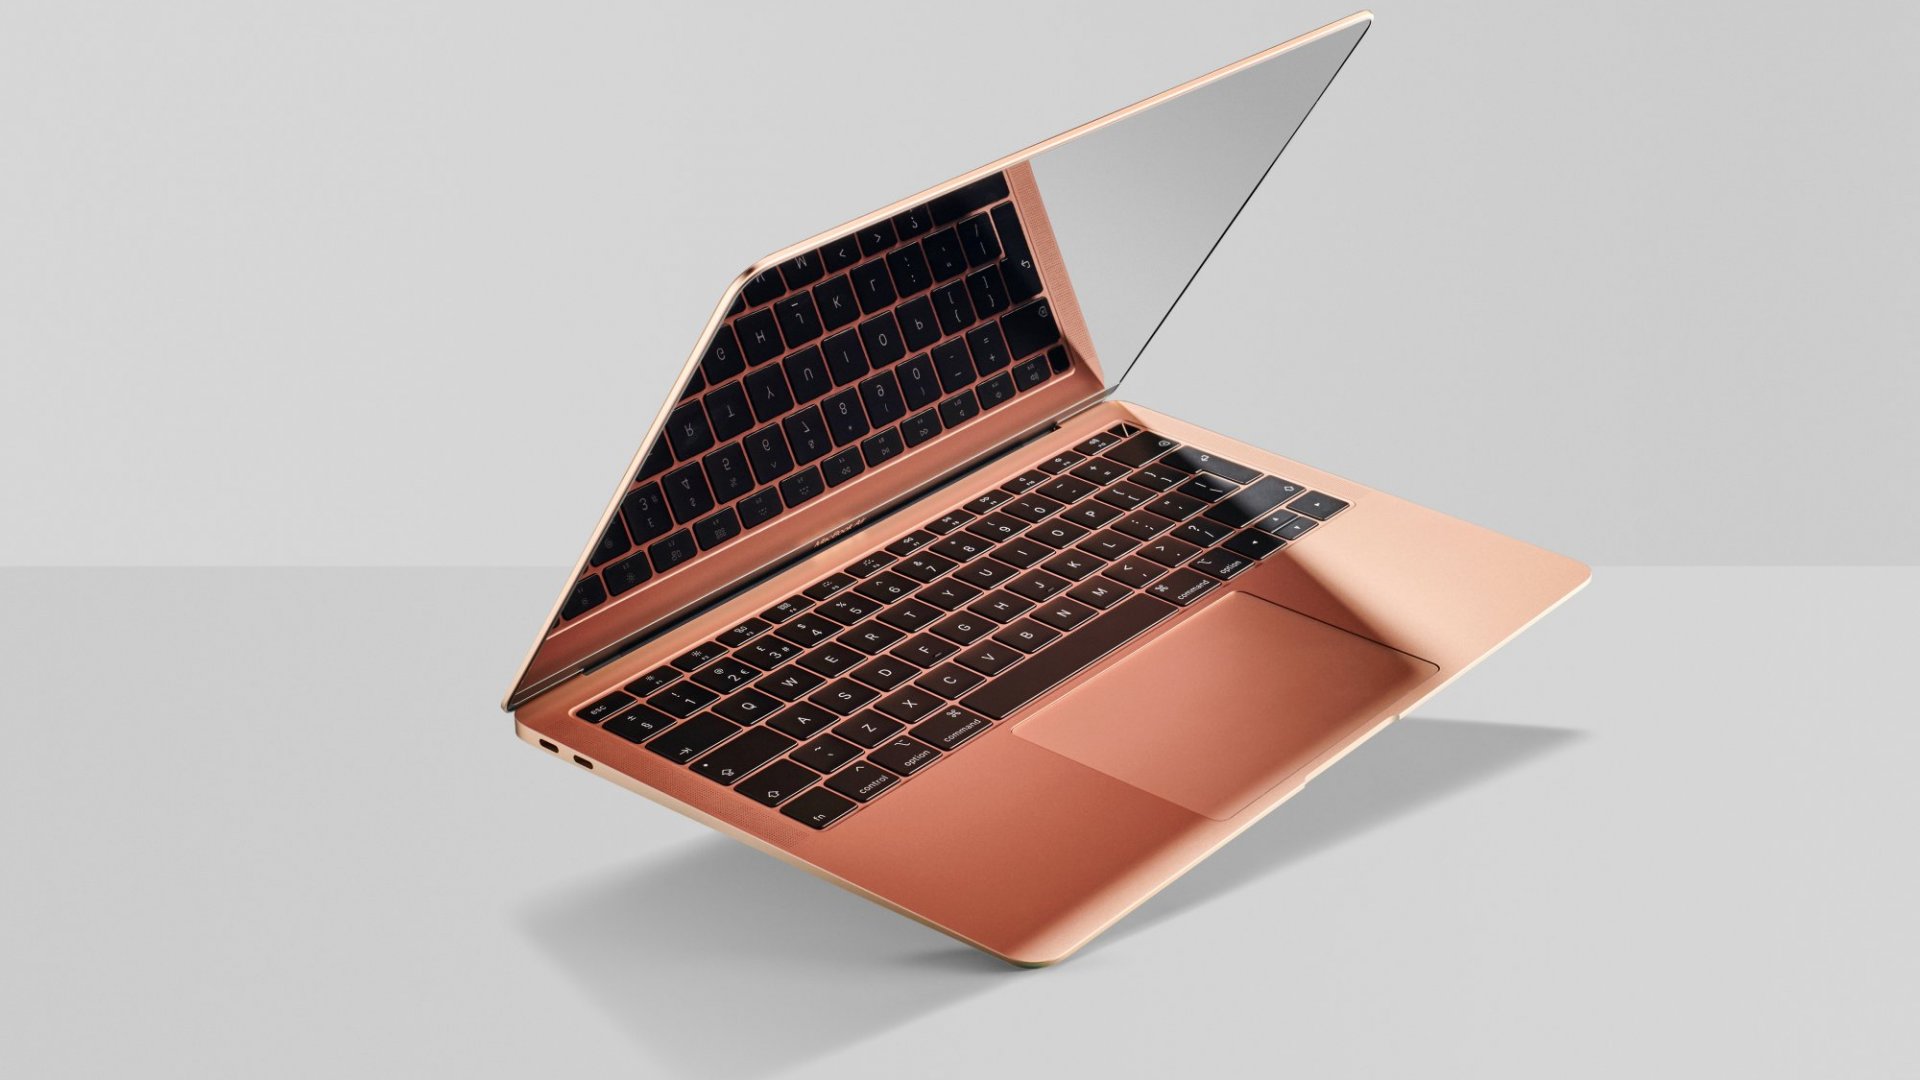 Best Laptops Under 1500